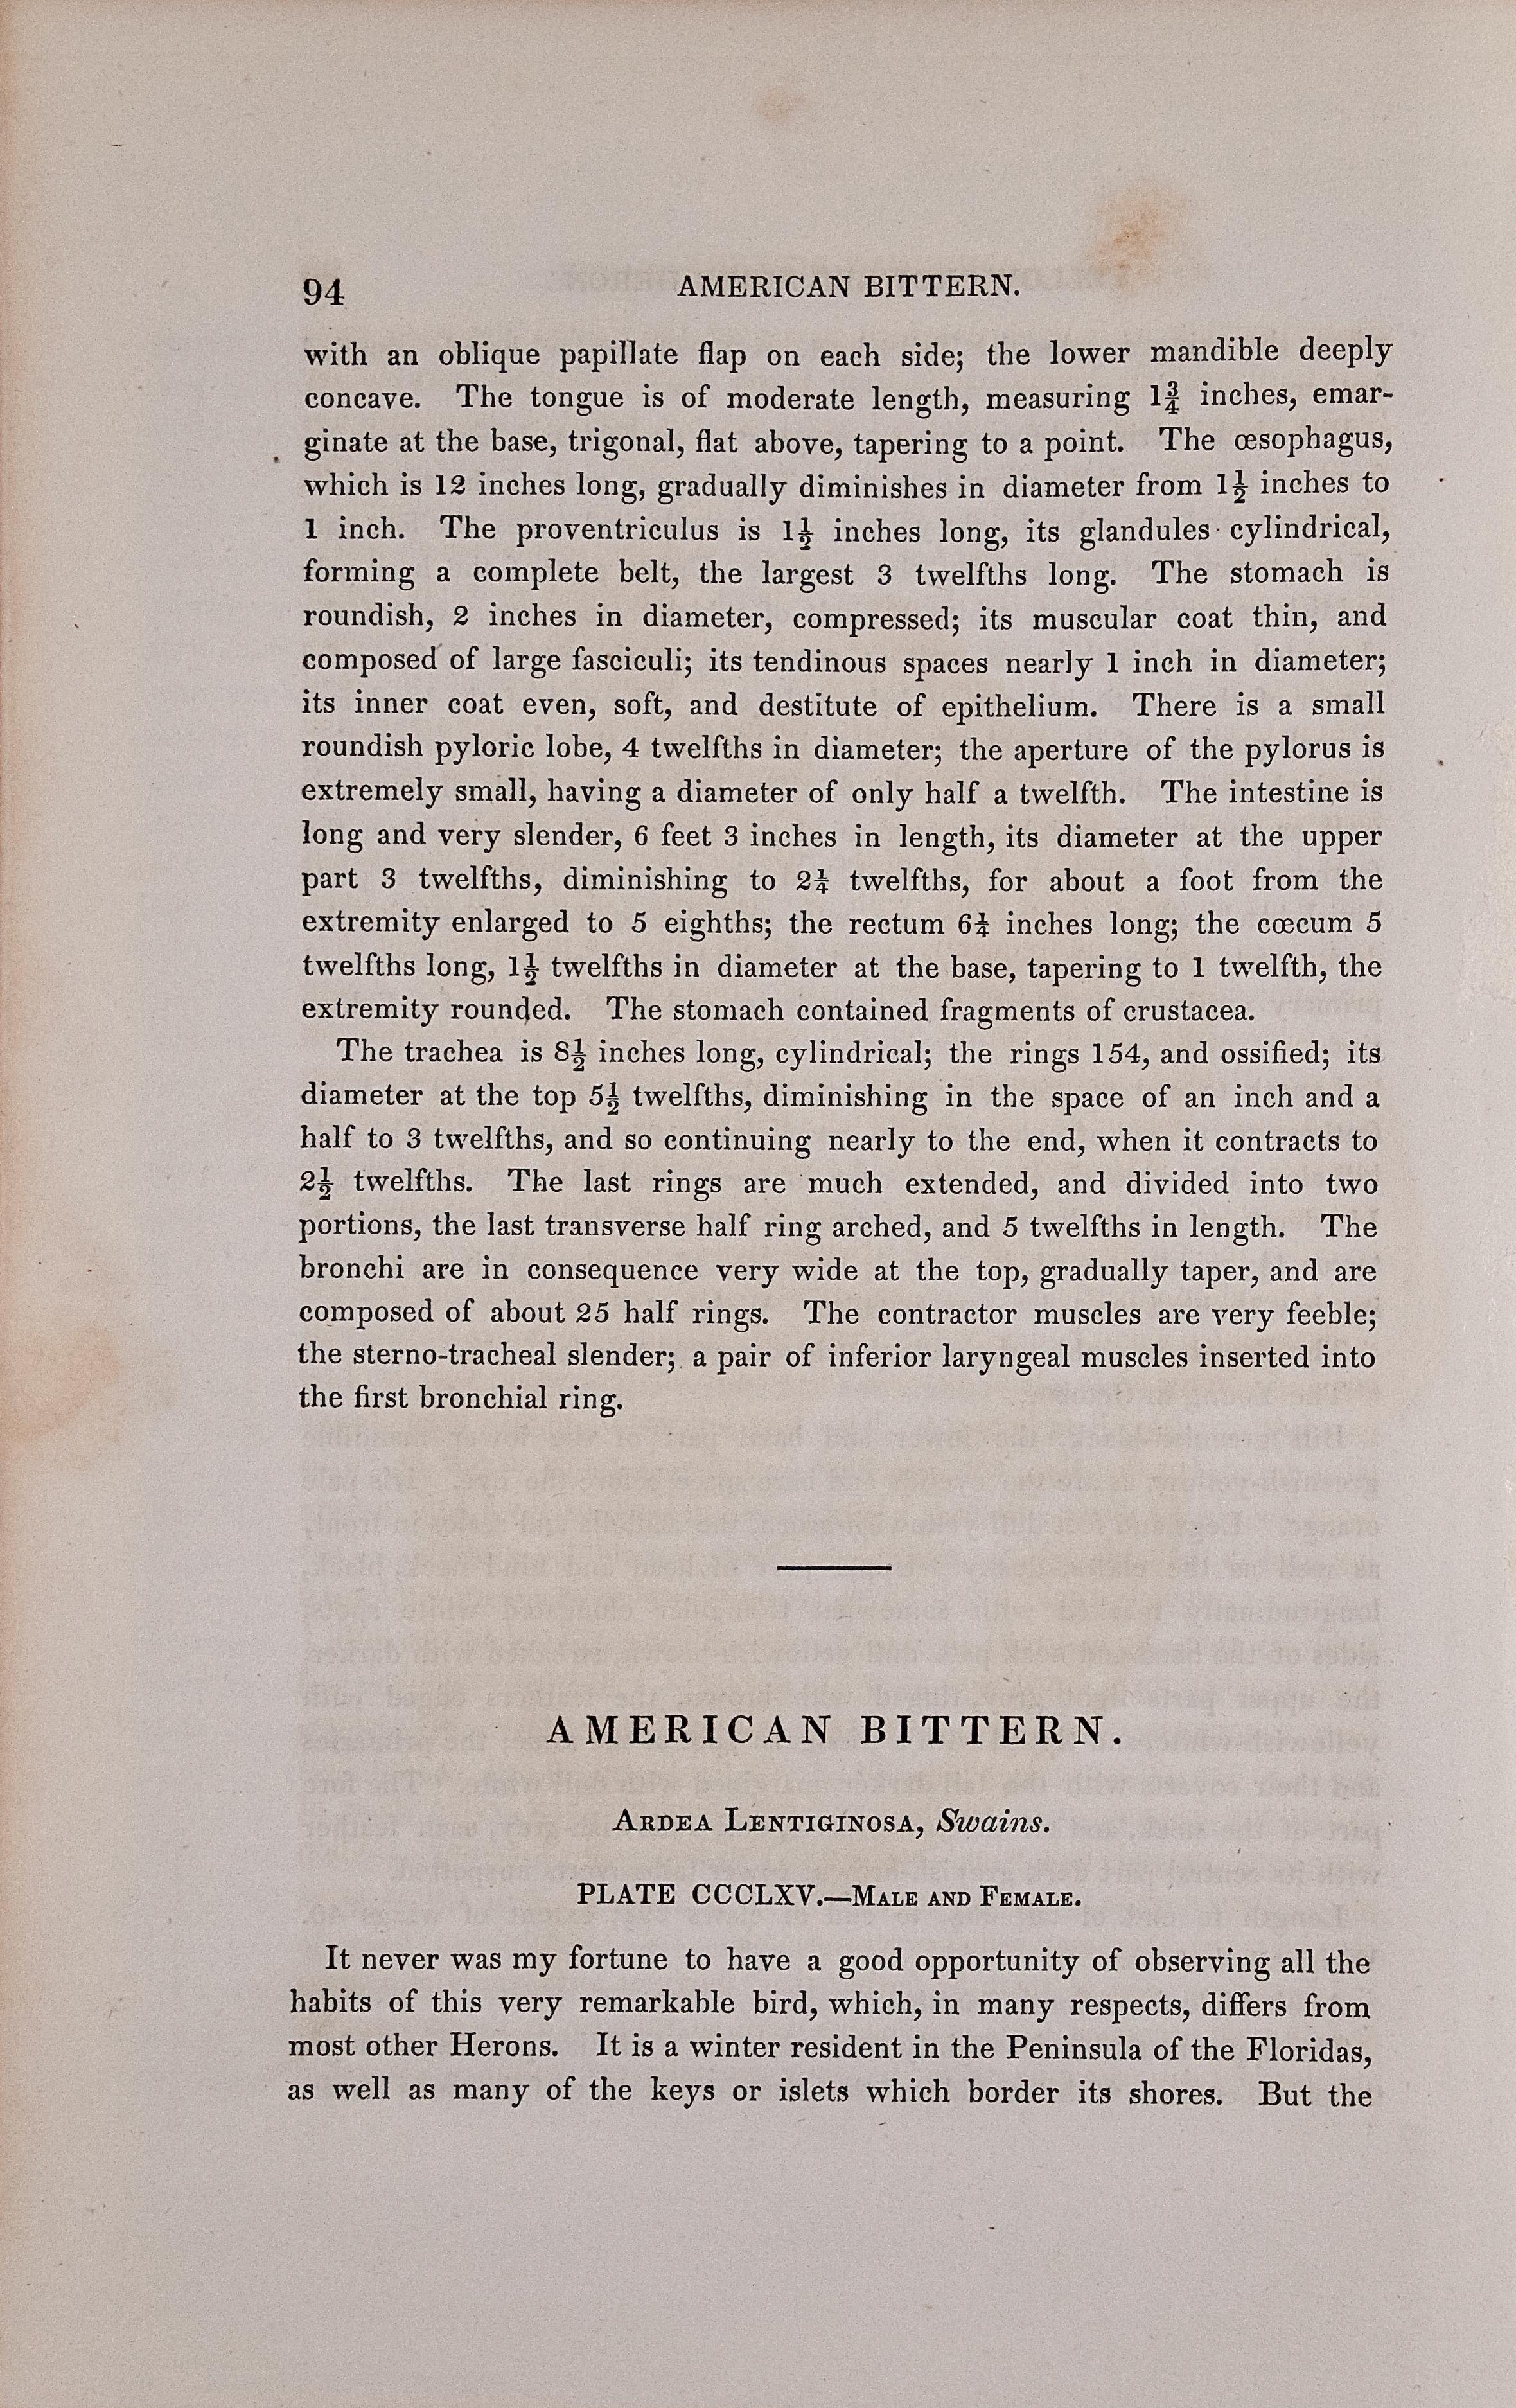 Il s'agit d'une lithographie originale du 19ème siècle, 1ère édition octavo de John James Audubon, coloriée à la main, intitulée 